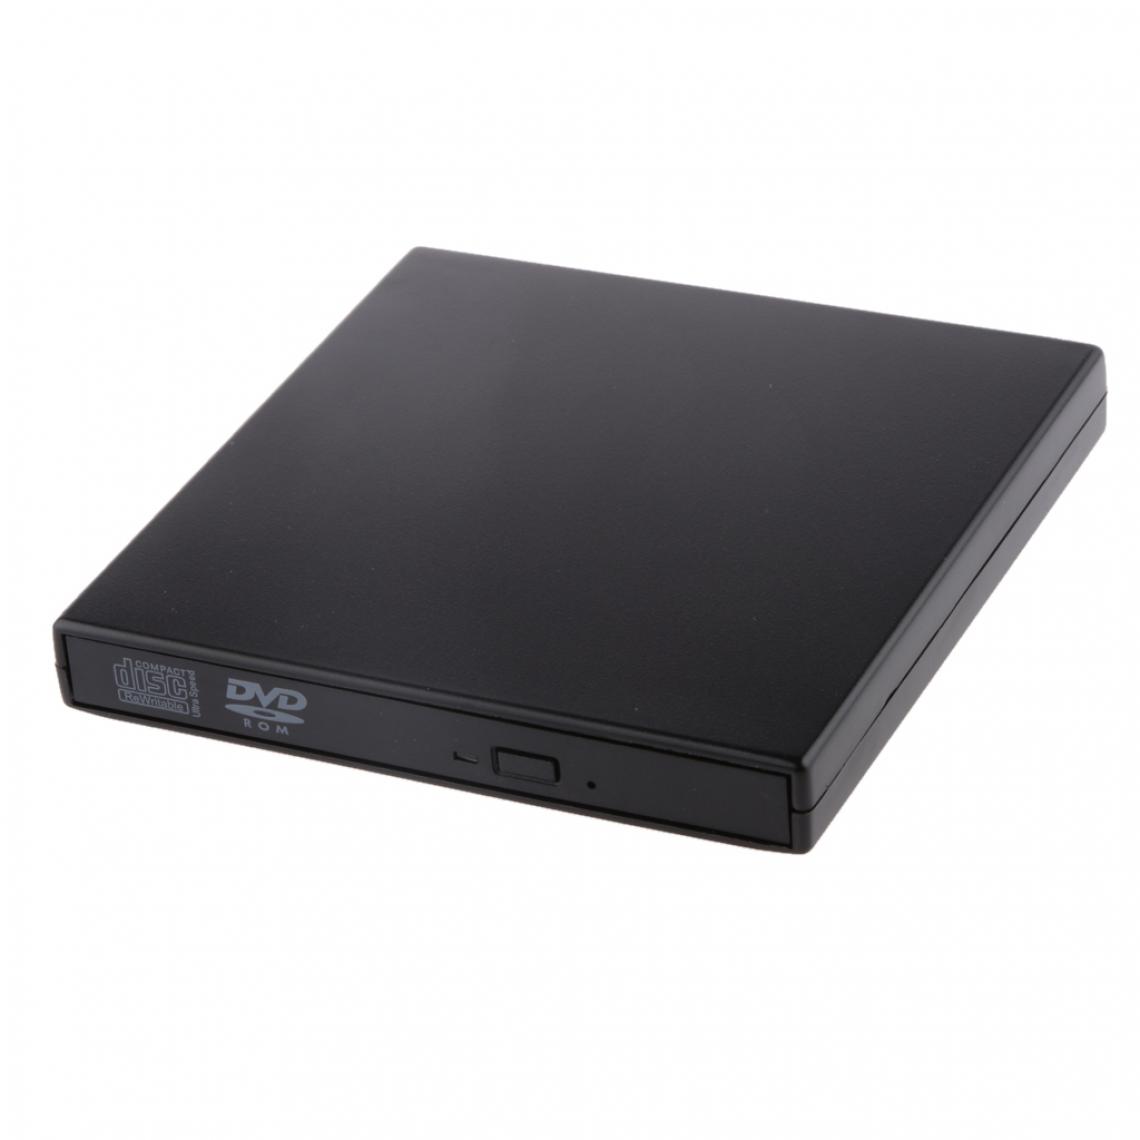 marque generique - Usb Dvd Externe Combo Cd-r / Rw Cd-rom Dvd-rom Lecteur Graveur Ordinateur Portable Noir - SSD Interne